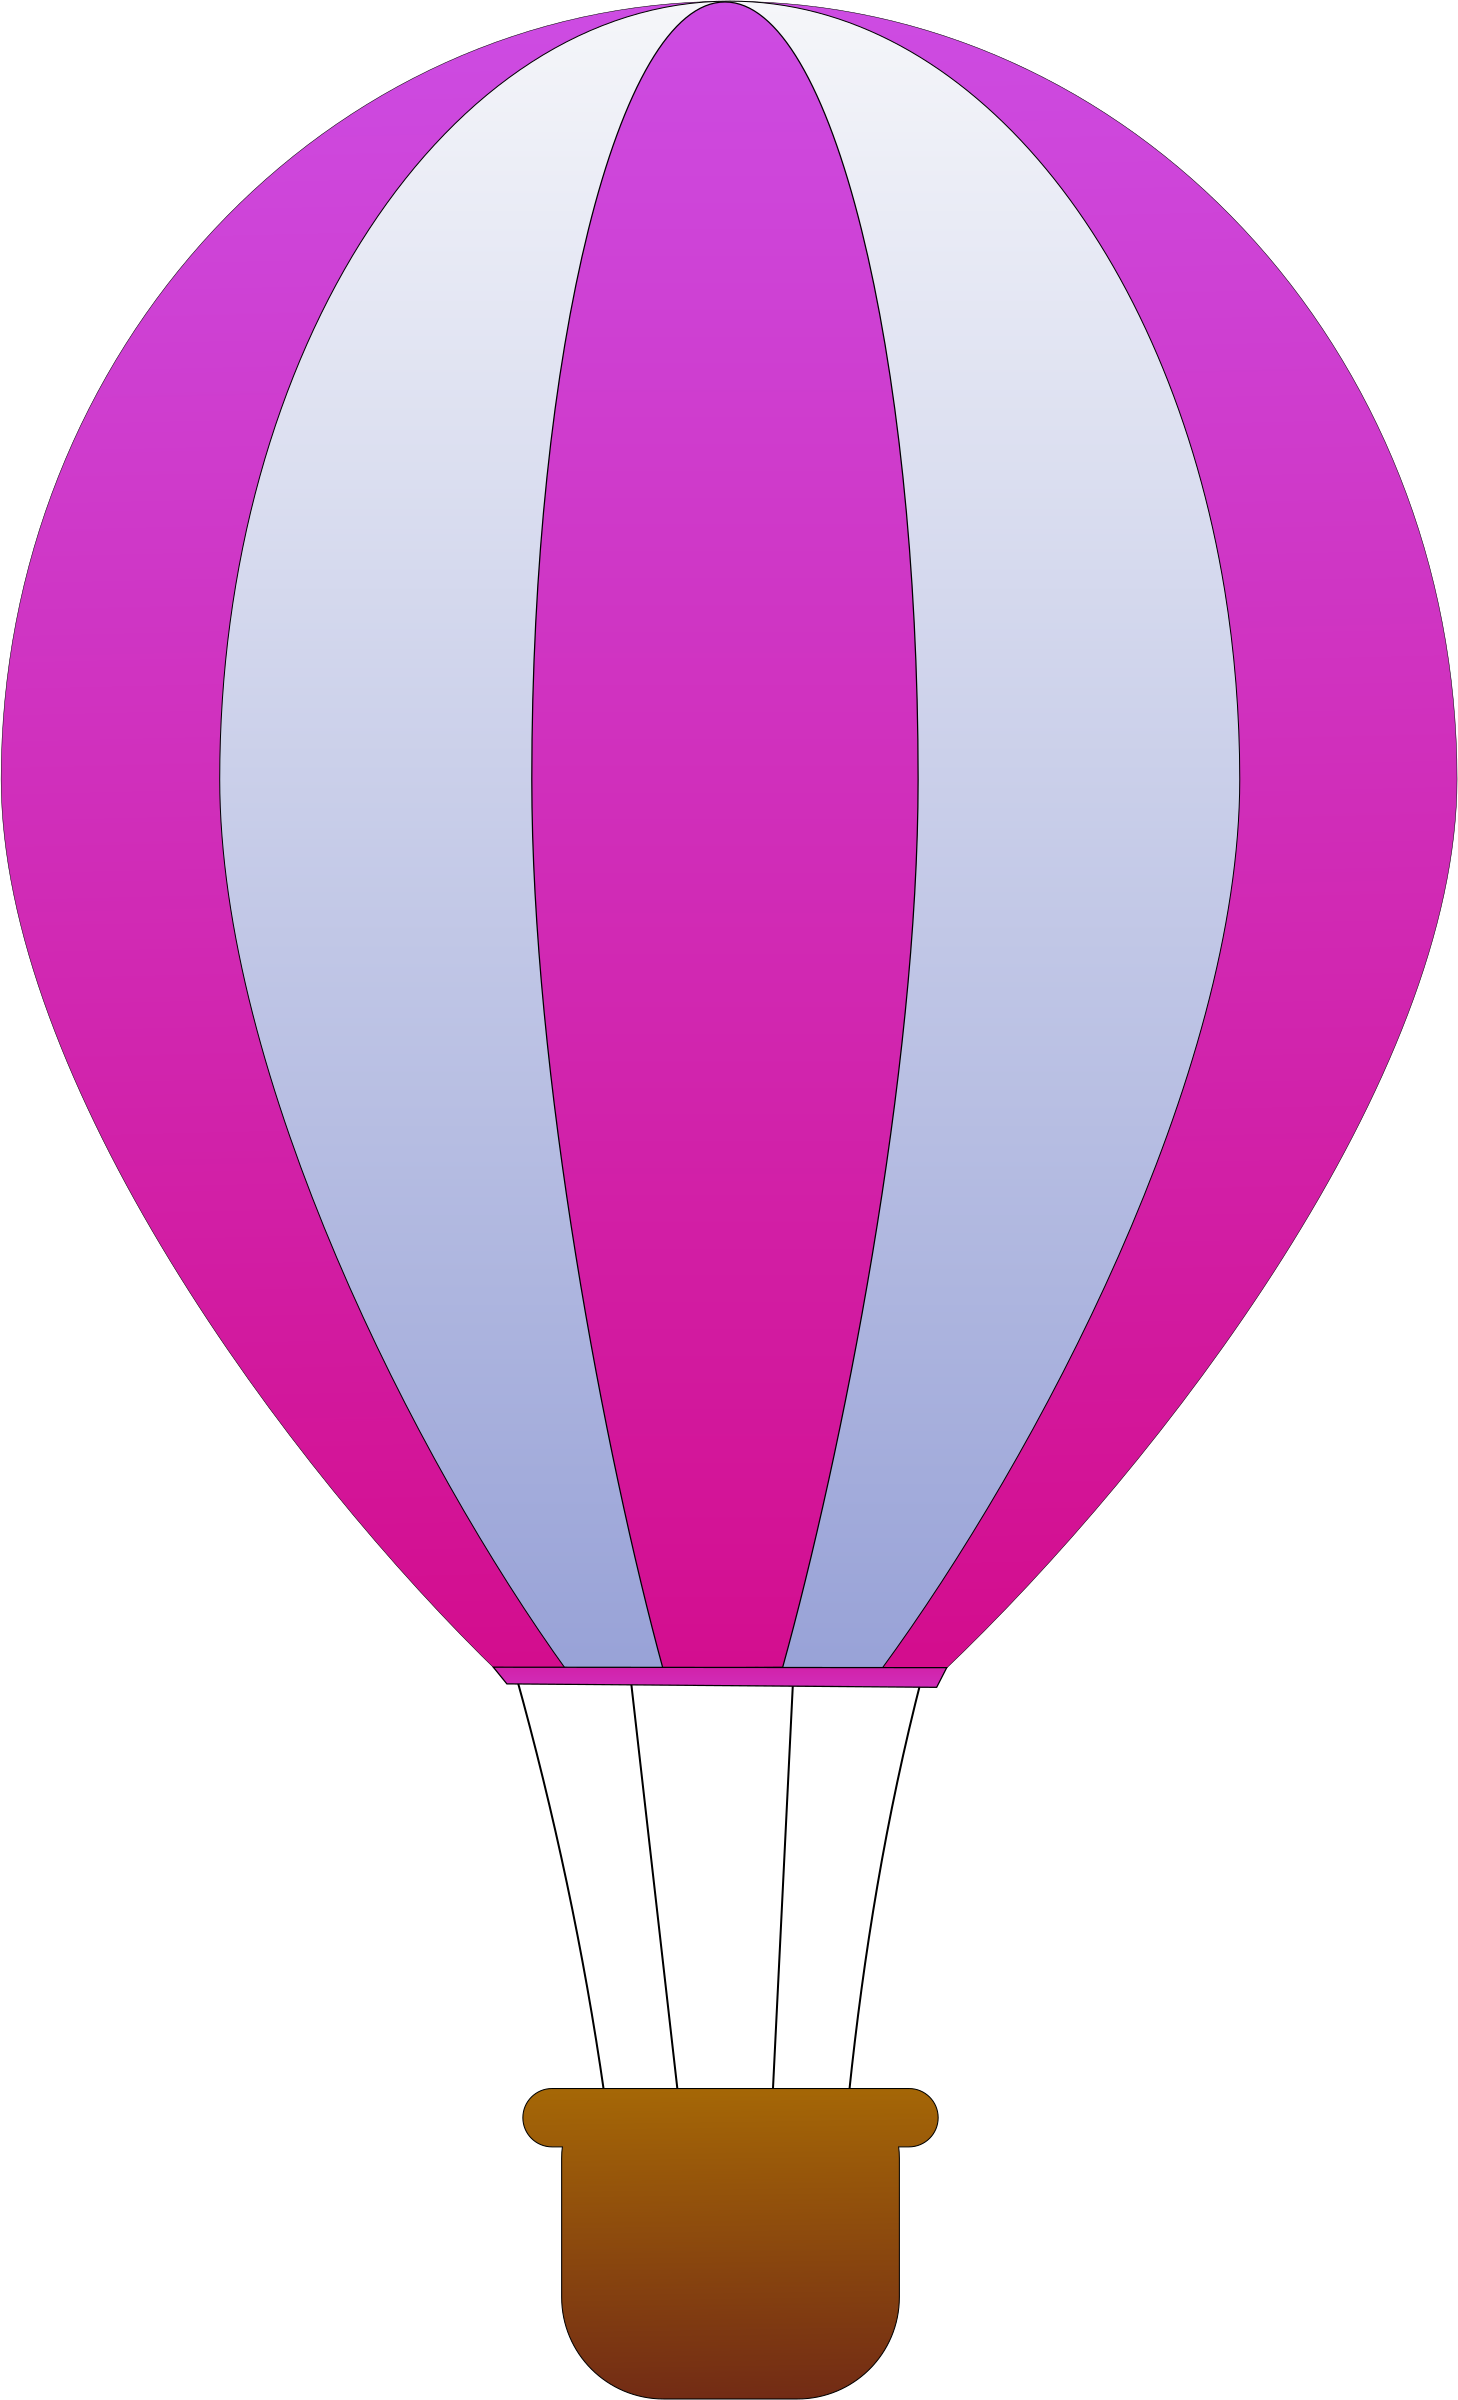 Hot Air Balloon PNG Photo Image